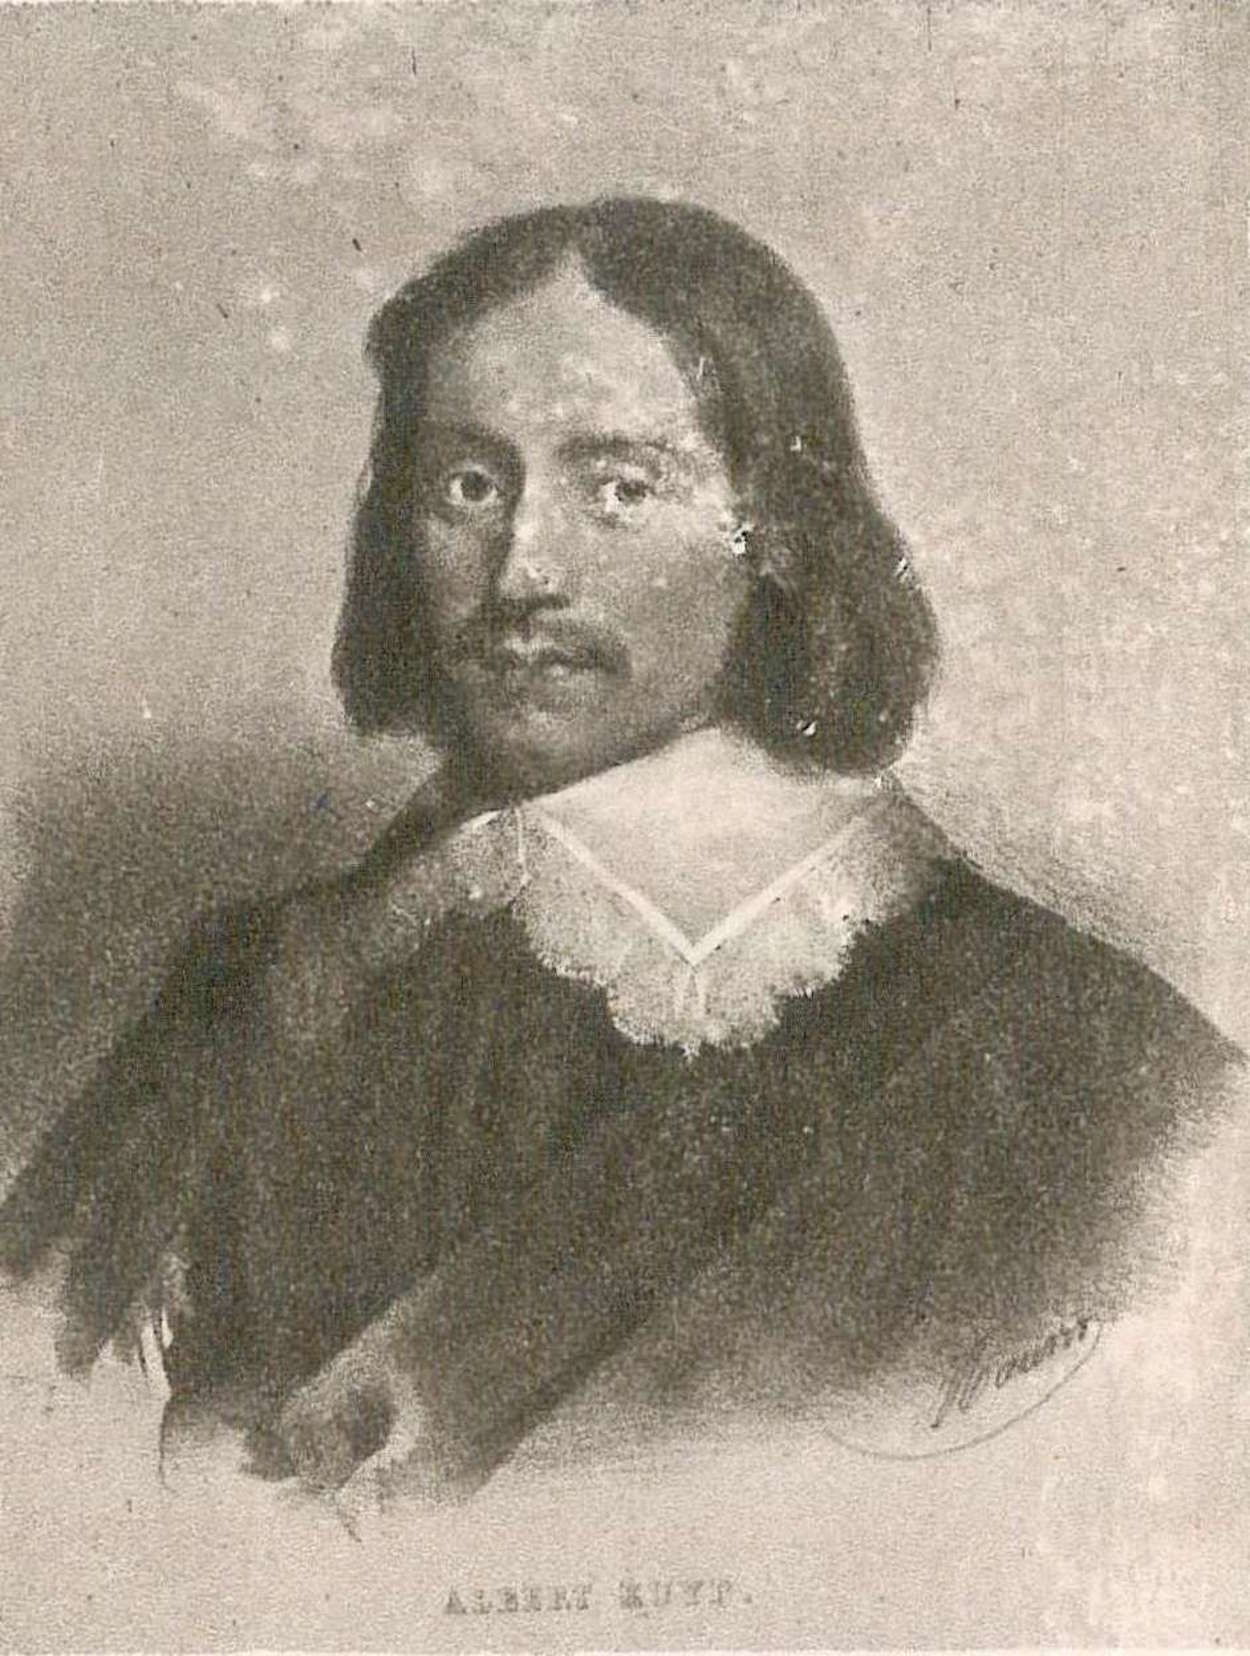 Albert Cuyp - 20 de octubre de 1620 - 15 de noviembre de 1691